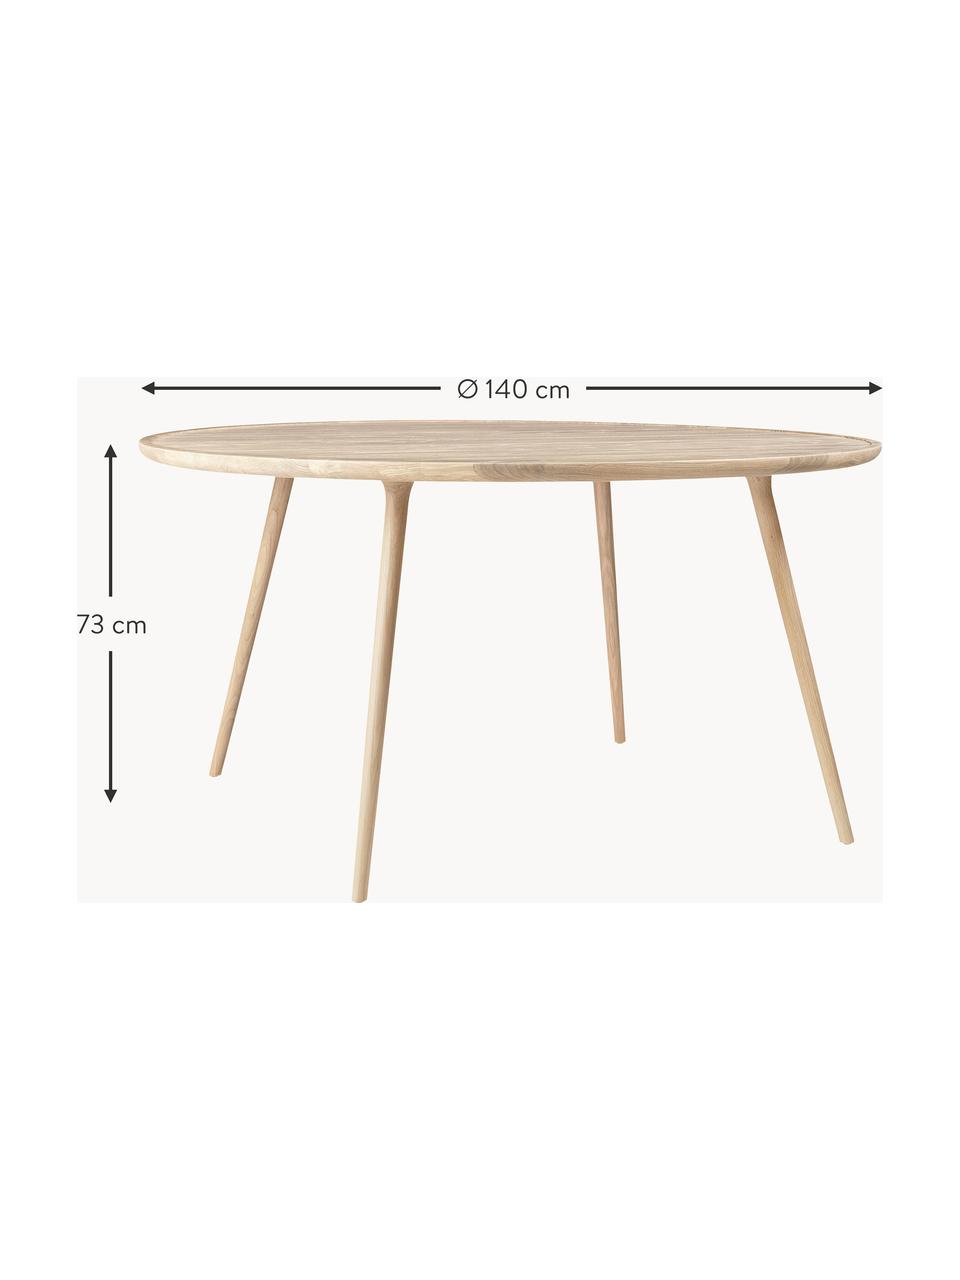 Okrągły stół do jadalni z drewna dębowego Accent, różne rozmiary, Drewno dębowe

Ten produkt jest wykonany z drewna pochodzącego ze zrównoważonych upraw, które posiada certyfikat FSC®, Drewno dębowe, Ø 140 x W 73 cm